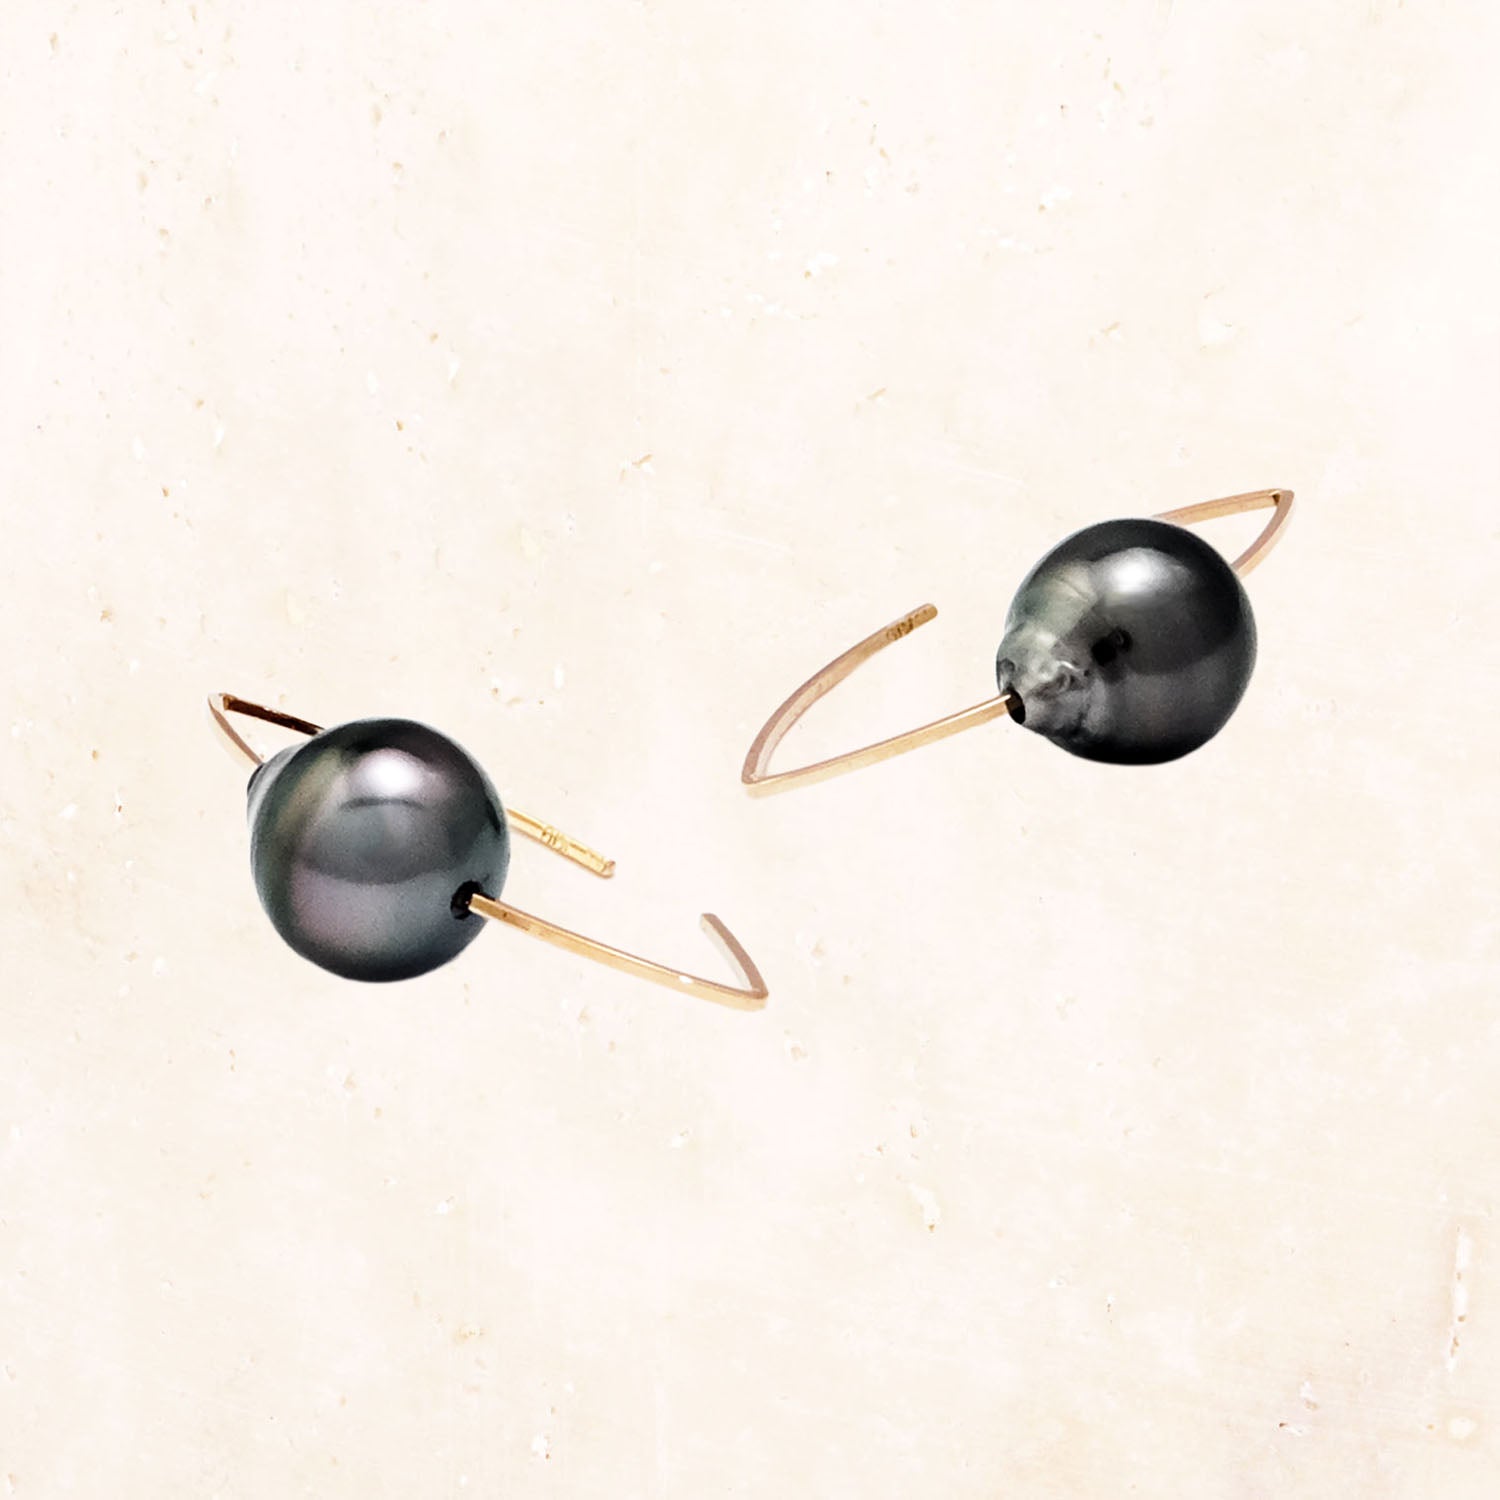 10K South Sea Pearl Almond Earrings